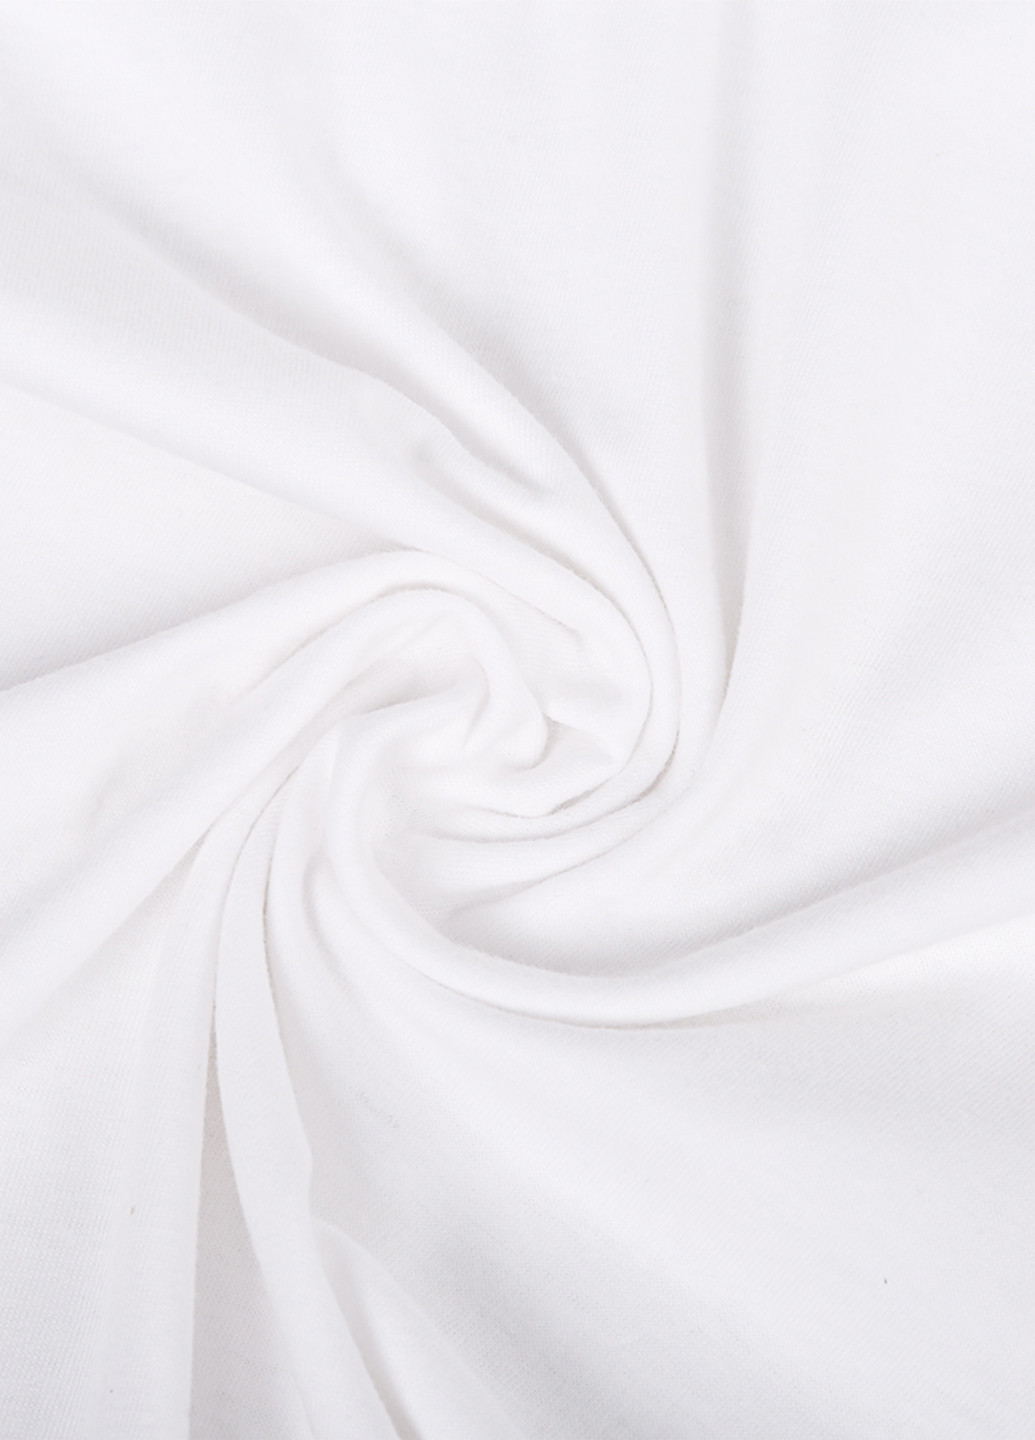 Біла демісезонна футболка дитяча билл шифр гравити фолз (bill cipher gravity falls) білий (9224-2627) 110 см MobiPrint